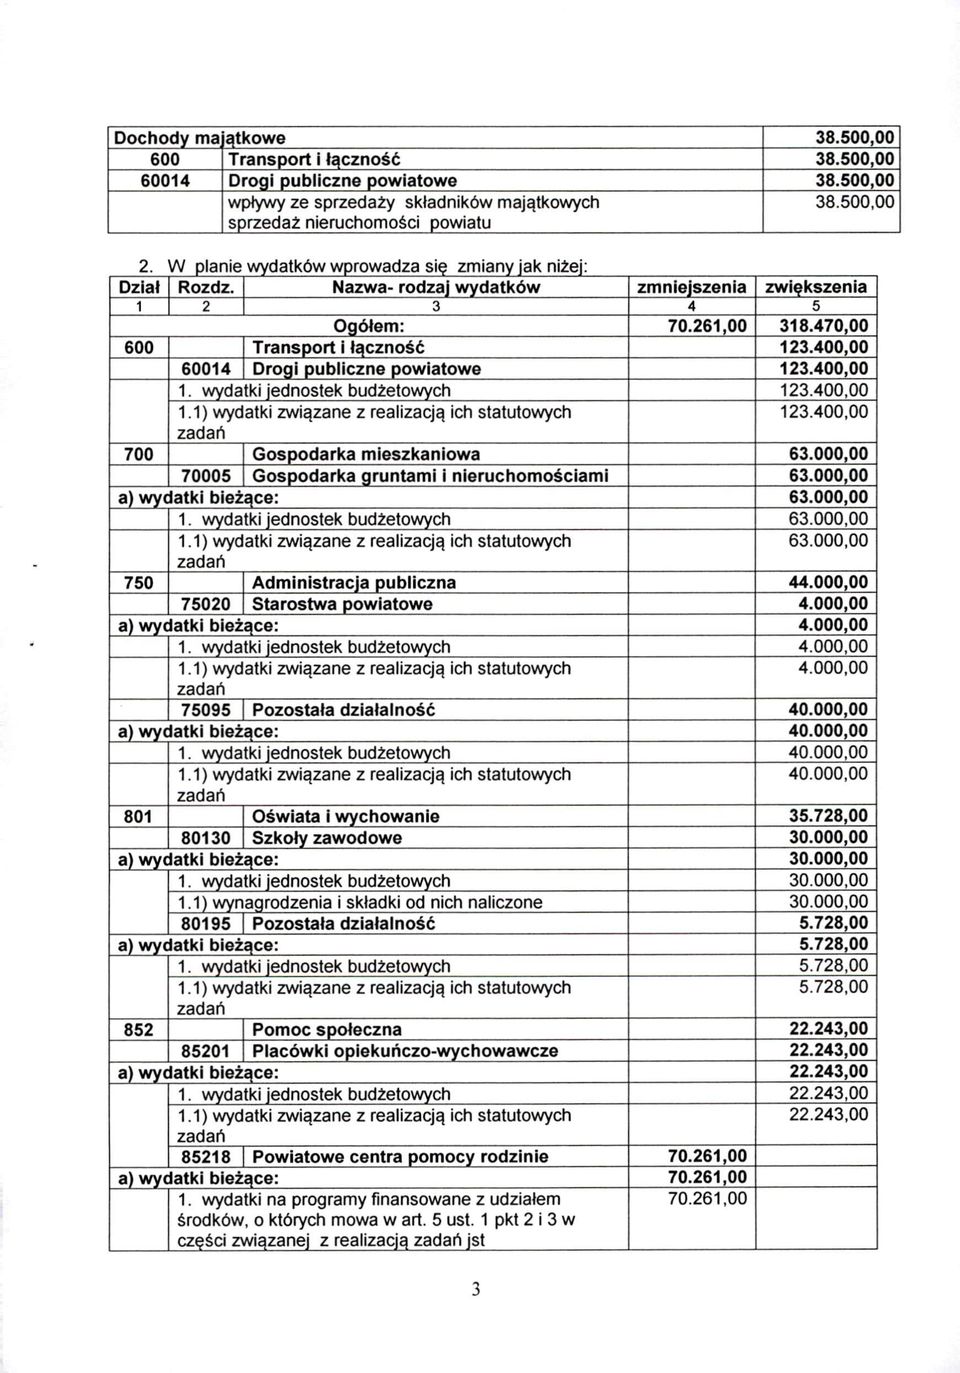 400,00 60014 I Droai oubliczne oowiatowe 123.400,00 1. wydatki jednostek budżetowych 123.400,00 1.1) wydatki związane z realizacją ich statutowych 123.